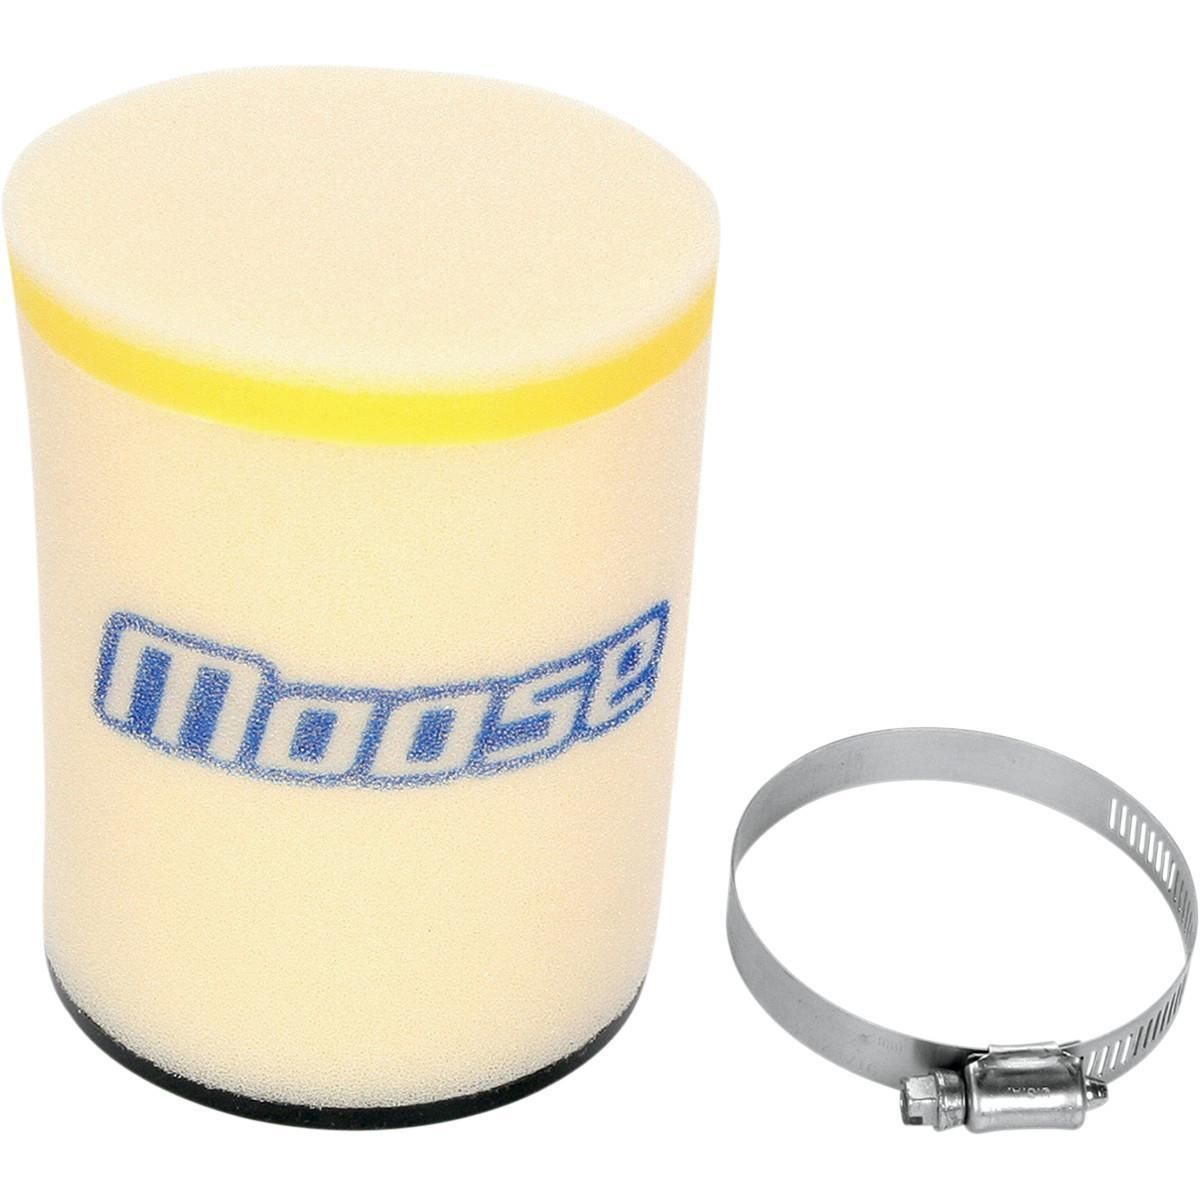 Moose Dry Air Filter - M7632019 | Partzilla.com